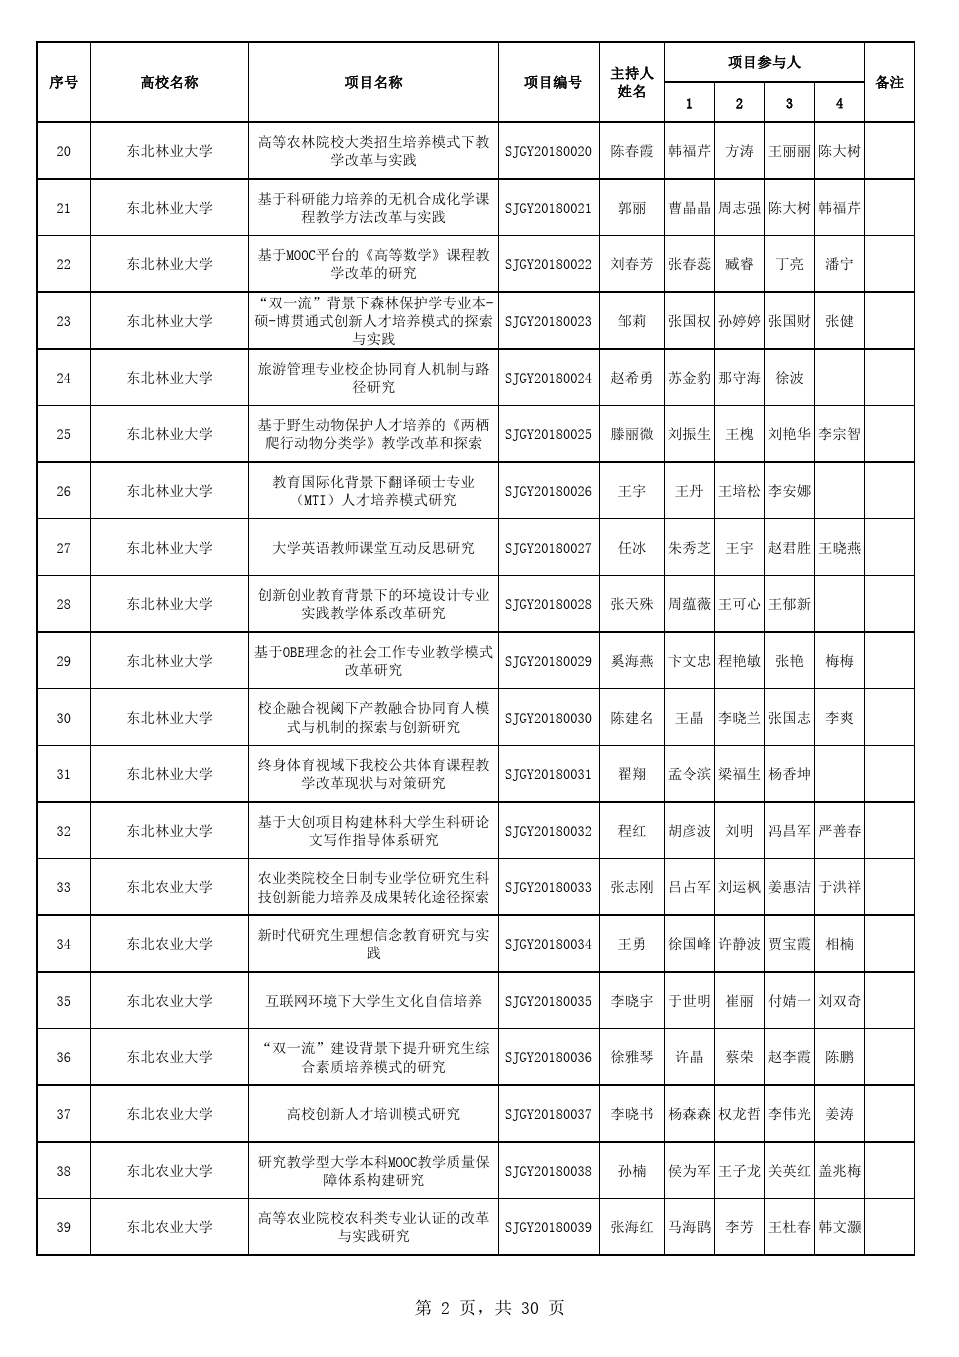 2018年度黑龙江省高等教育教学改革一般研究项目汇总表